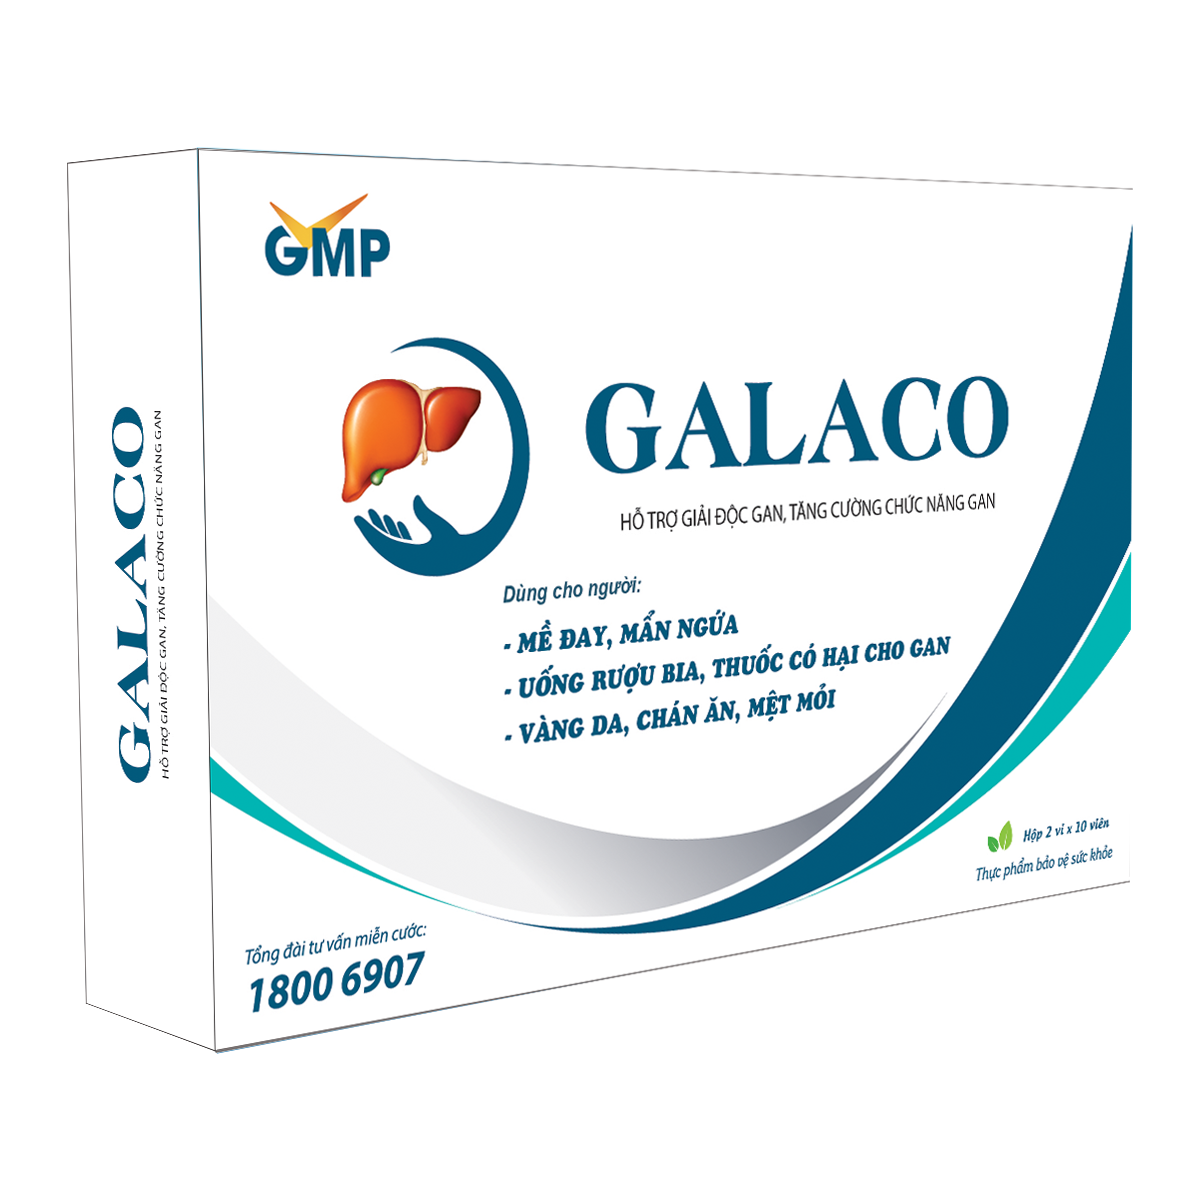 Hình ảnh TPBVSK GALACO - Hỗ trợ giải độc gan, tăng cường chức năng gan